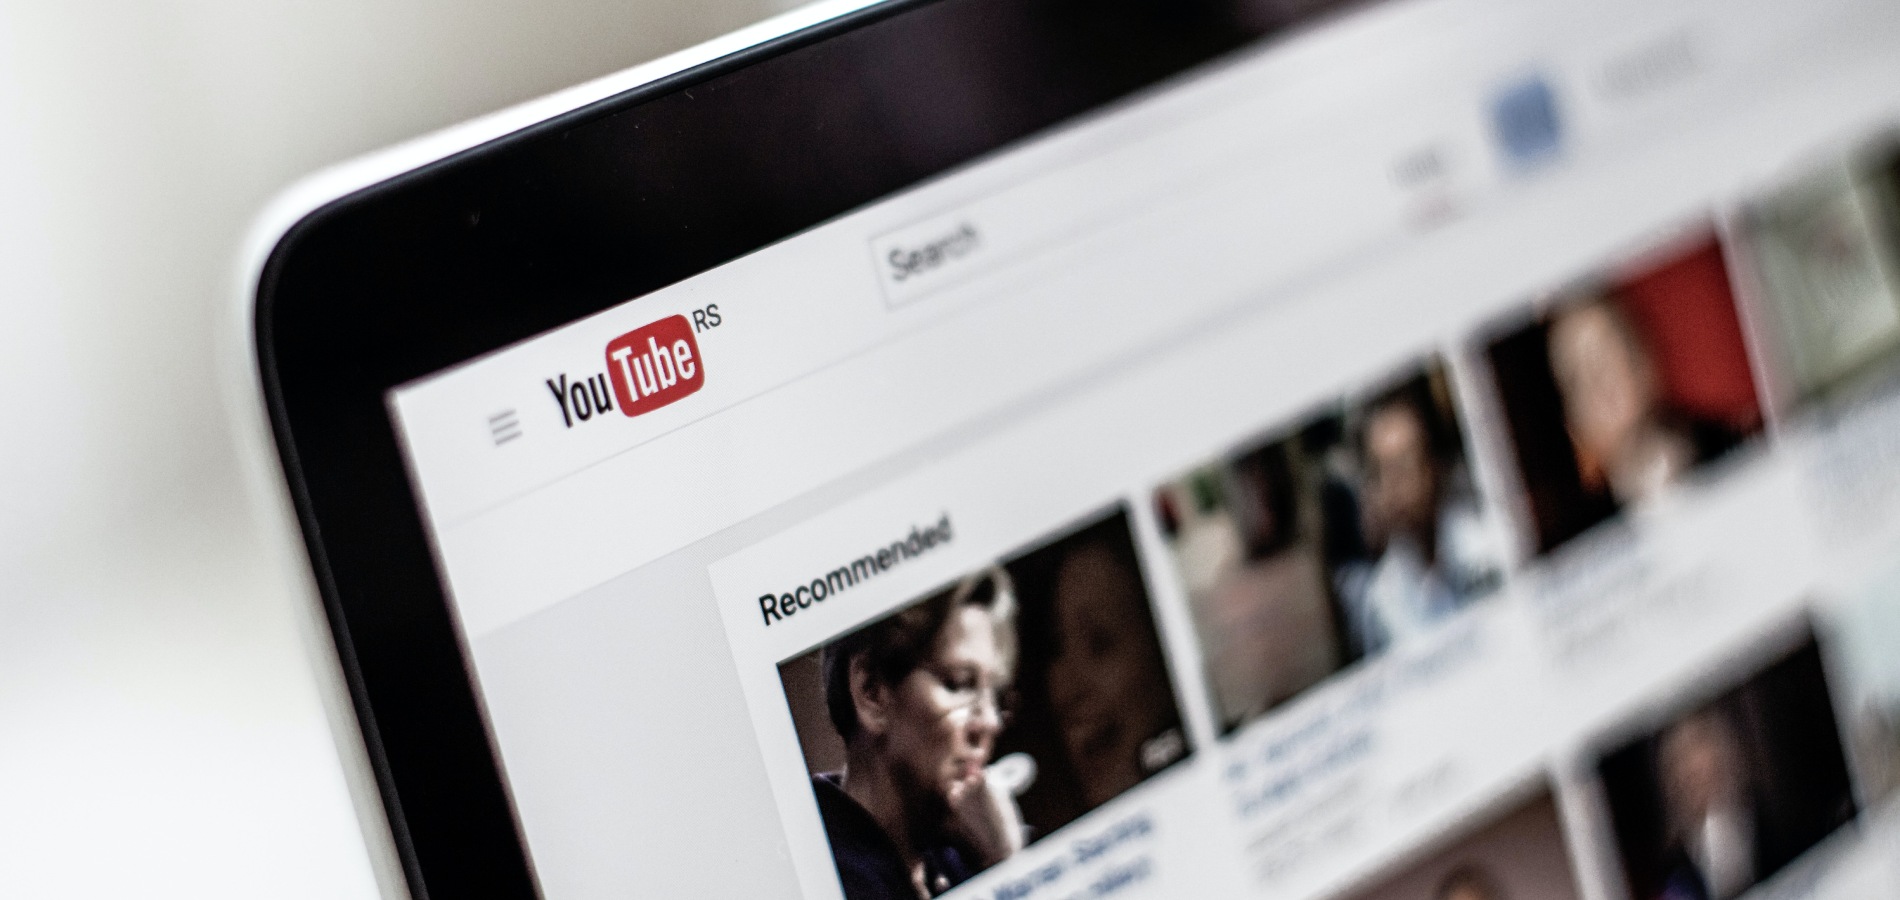 YouTube не покажет рекомендации тем пользователям, кто отключил историю просмотров